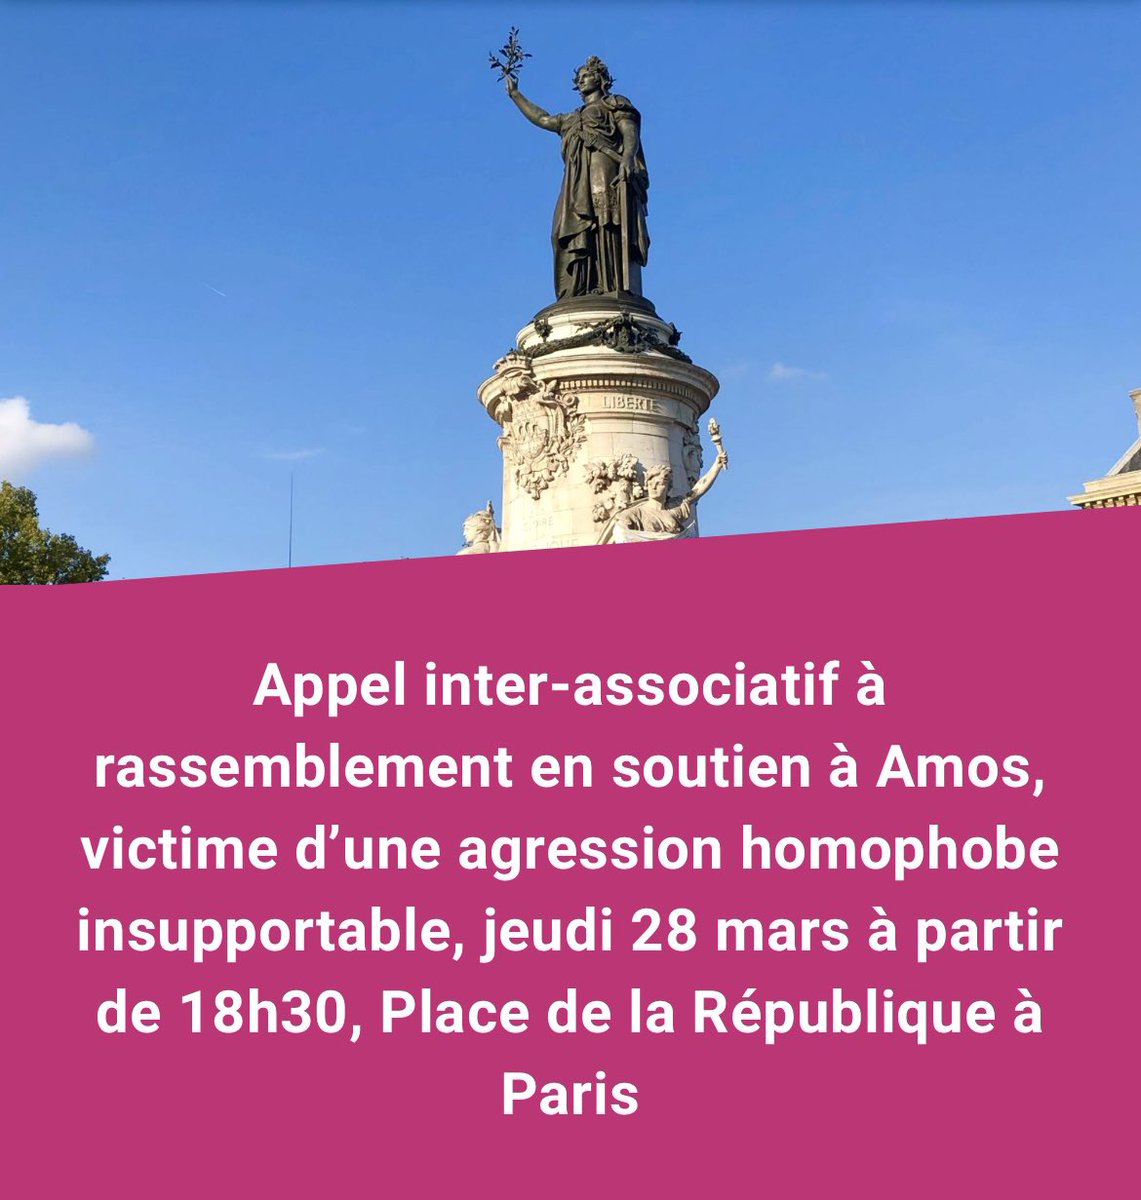 🔴 #RASSEMBLEMENT - Avec le @CentreLGBTParis @FederationLGBTI @_stophomophobie @HES_France, nous appelons à un rassemblement en soutien à #Amos, demain jeudi 28 mars à partir de 18h30, Place de la République, à Paris. Lire l’appel et les revendications ➡️sos-homophobie.org/nos-articles/a…